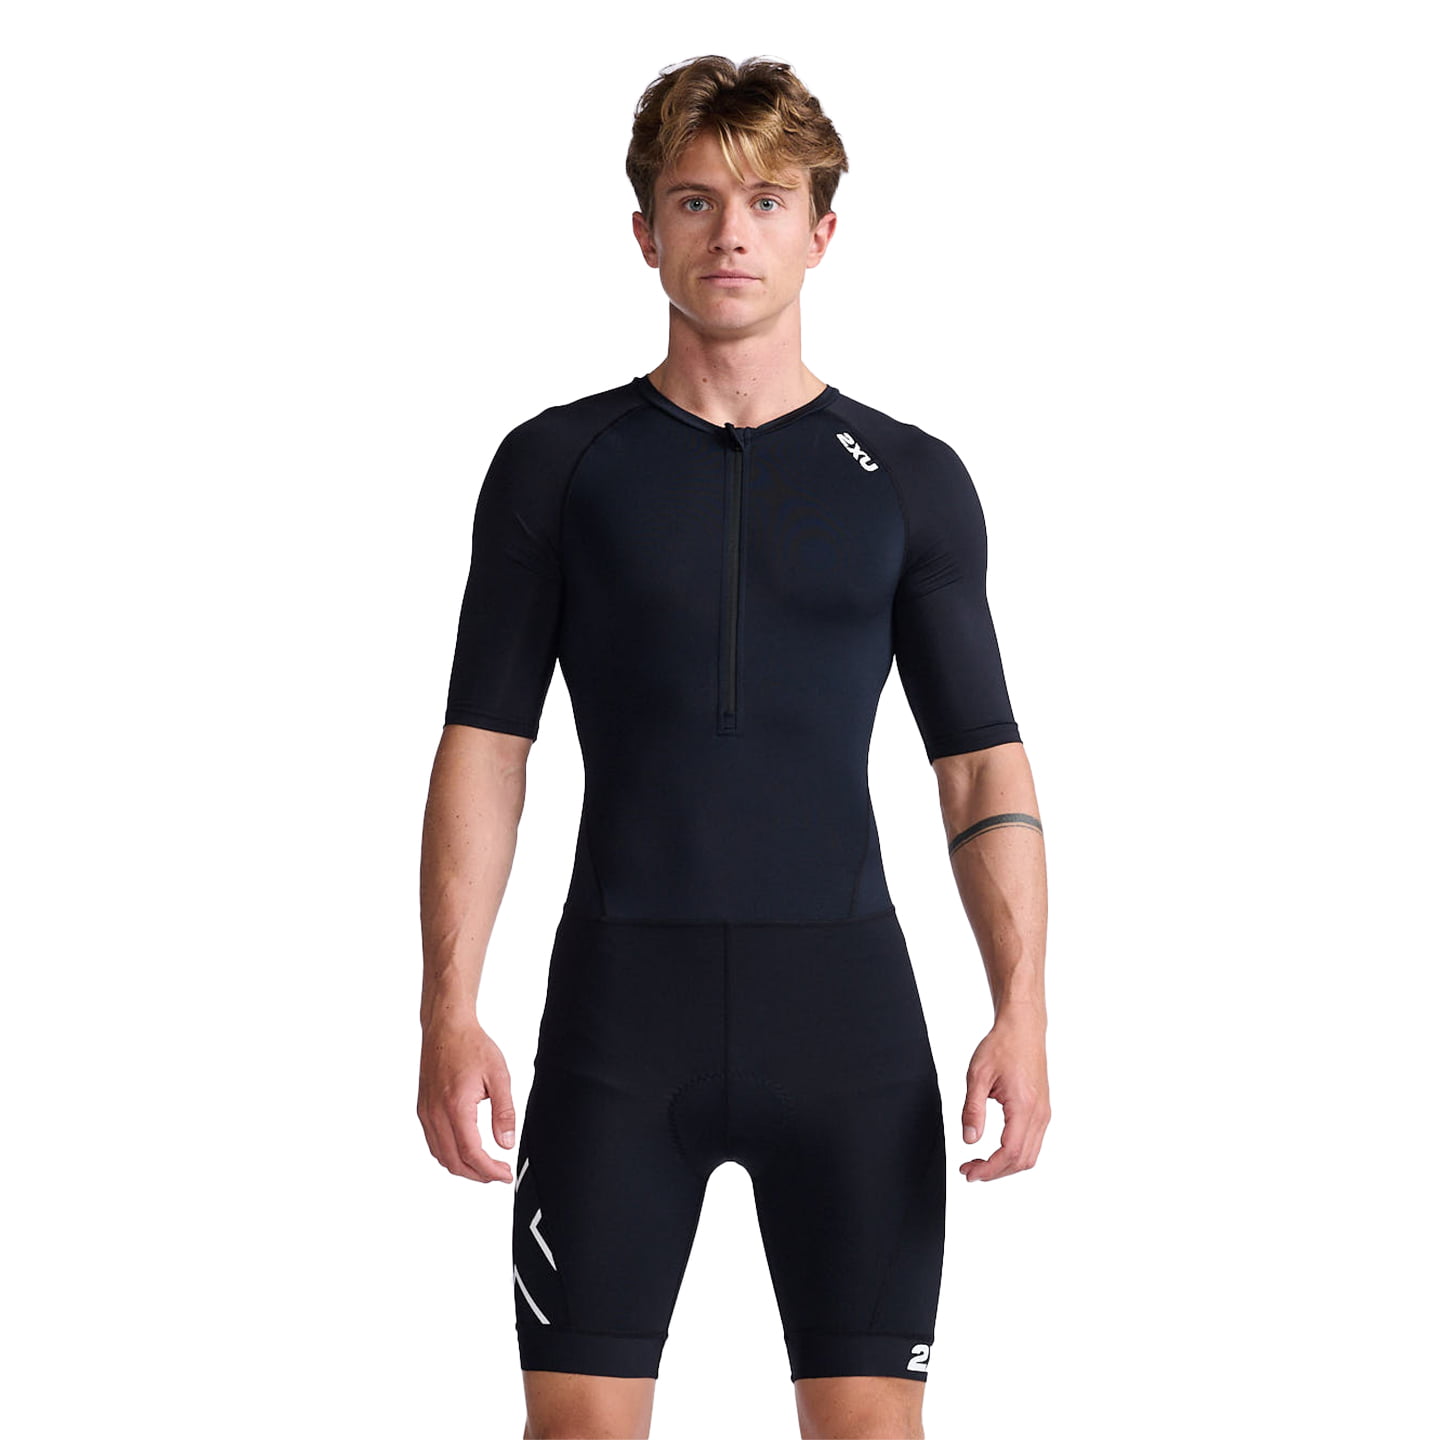 2XU Core Tri Suit Tri Suit, for men, size S, Triathlon suit, Triathlon clothing